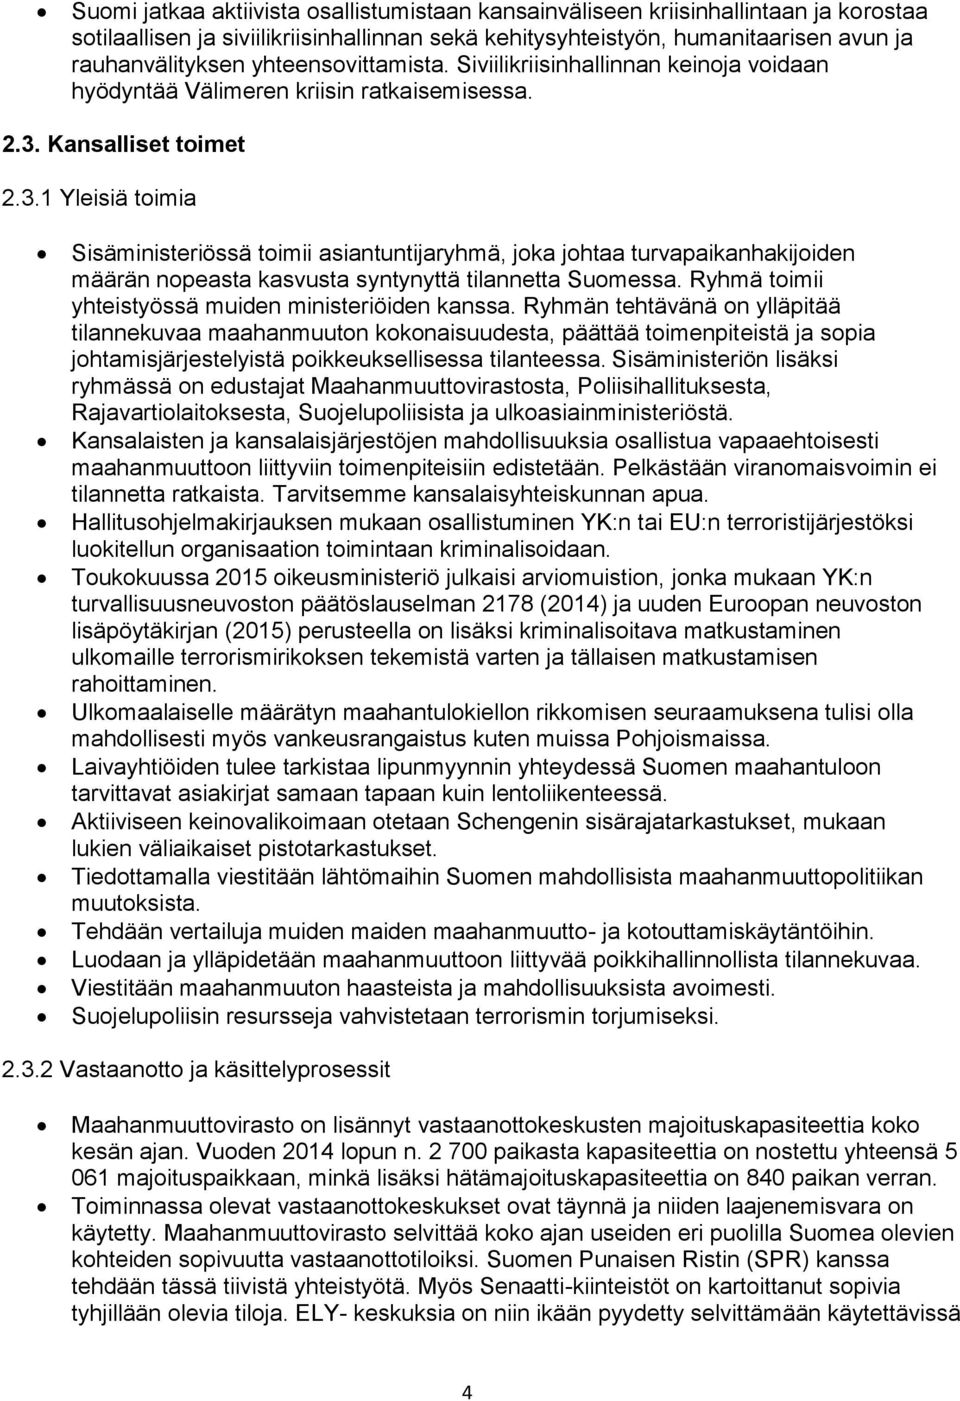 Kansalliset toimet 2.3.1 Yleisiä toimia Sisäministeriössä toimii asiantuntijaryhmä, joka johtaa turvapaikanhakijoiden määrän nopeasta kasvusta syntynyttä tilannetta Suomessa.